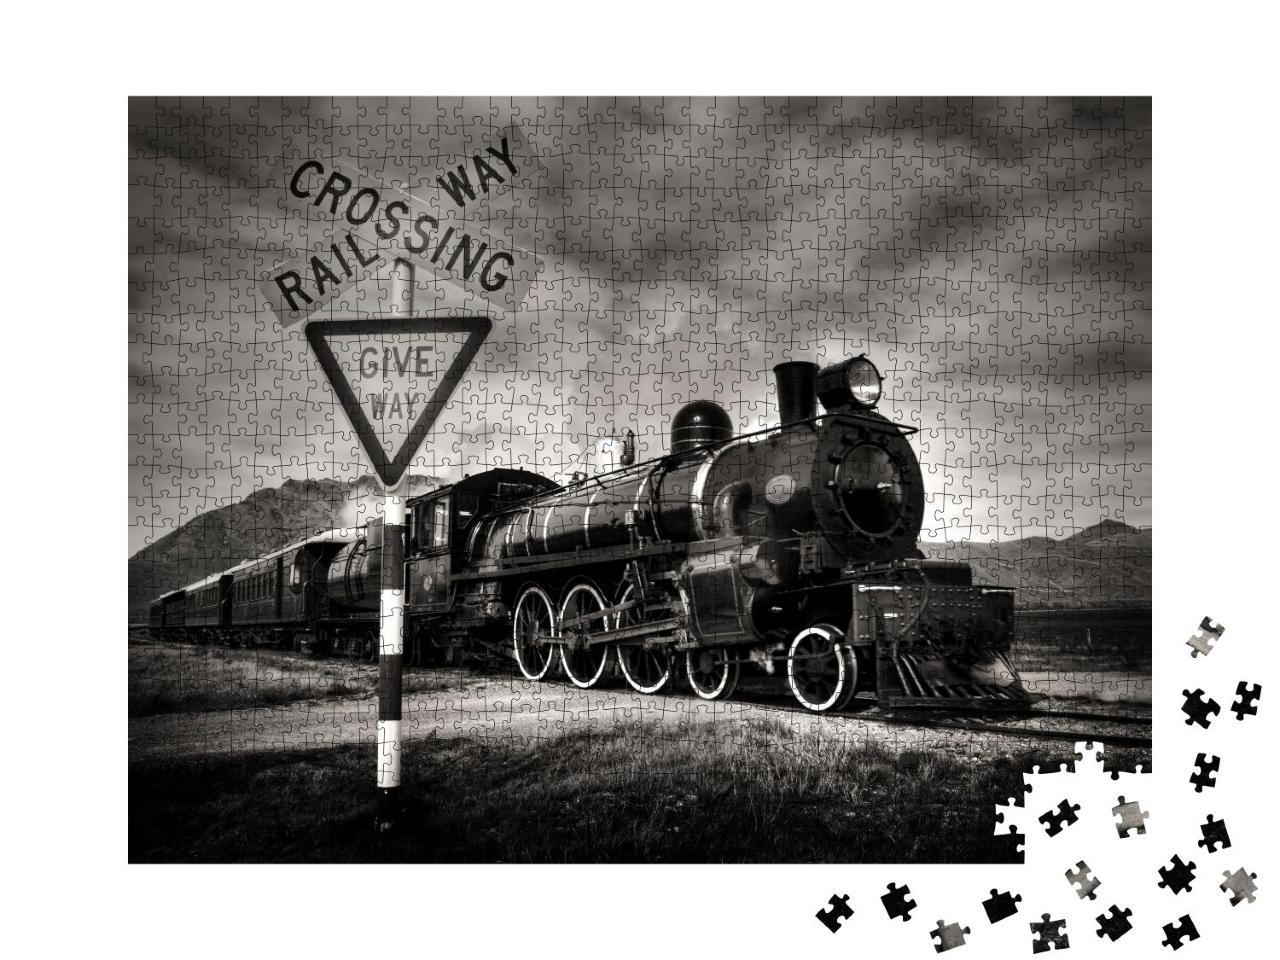 Puzzle 1000 Teile „Alte Dampflokomotive, Kingston, Neuseeland“